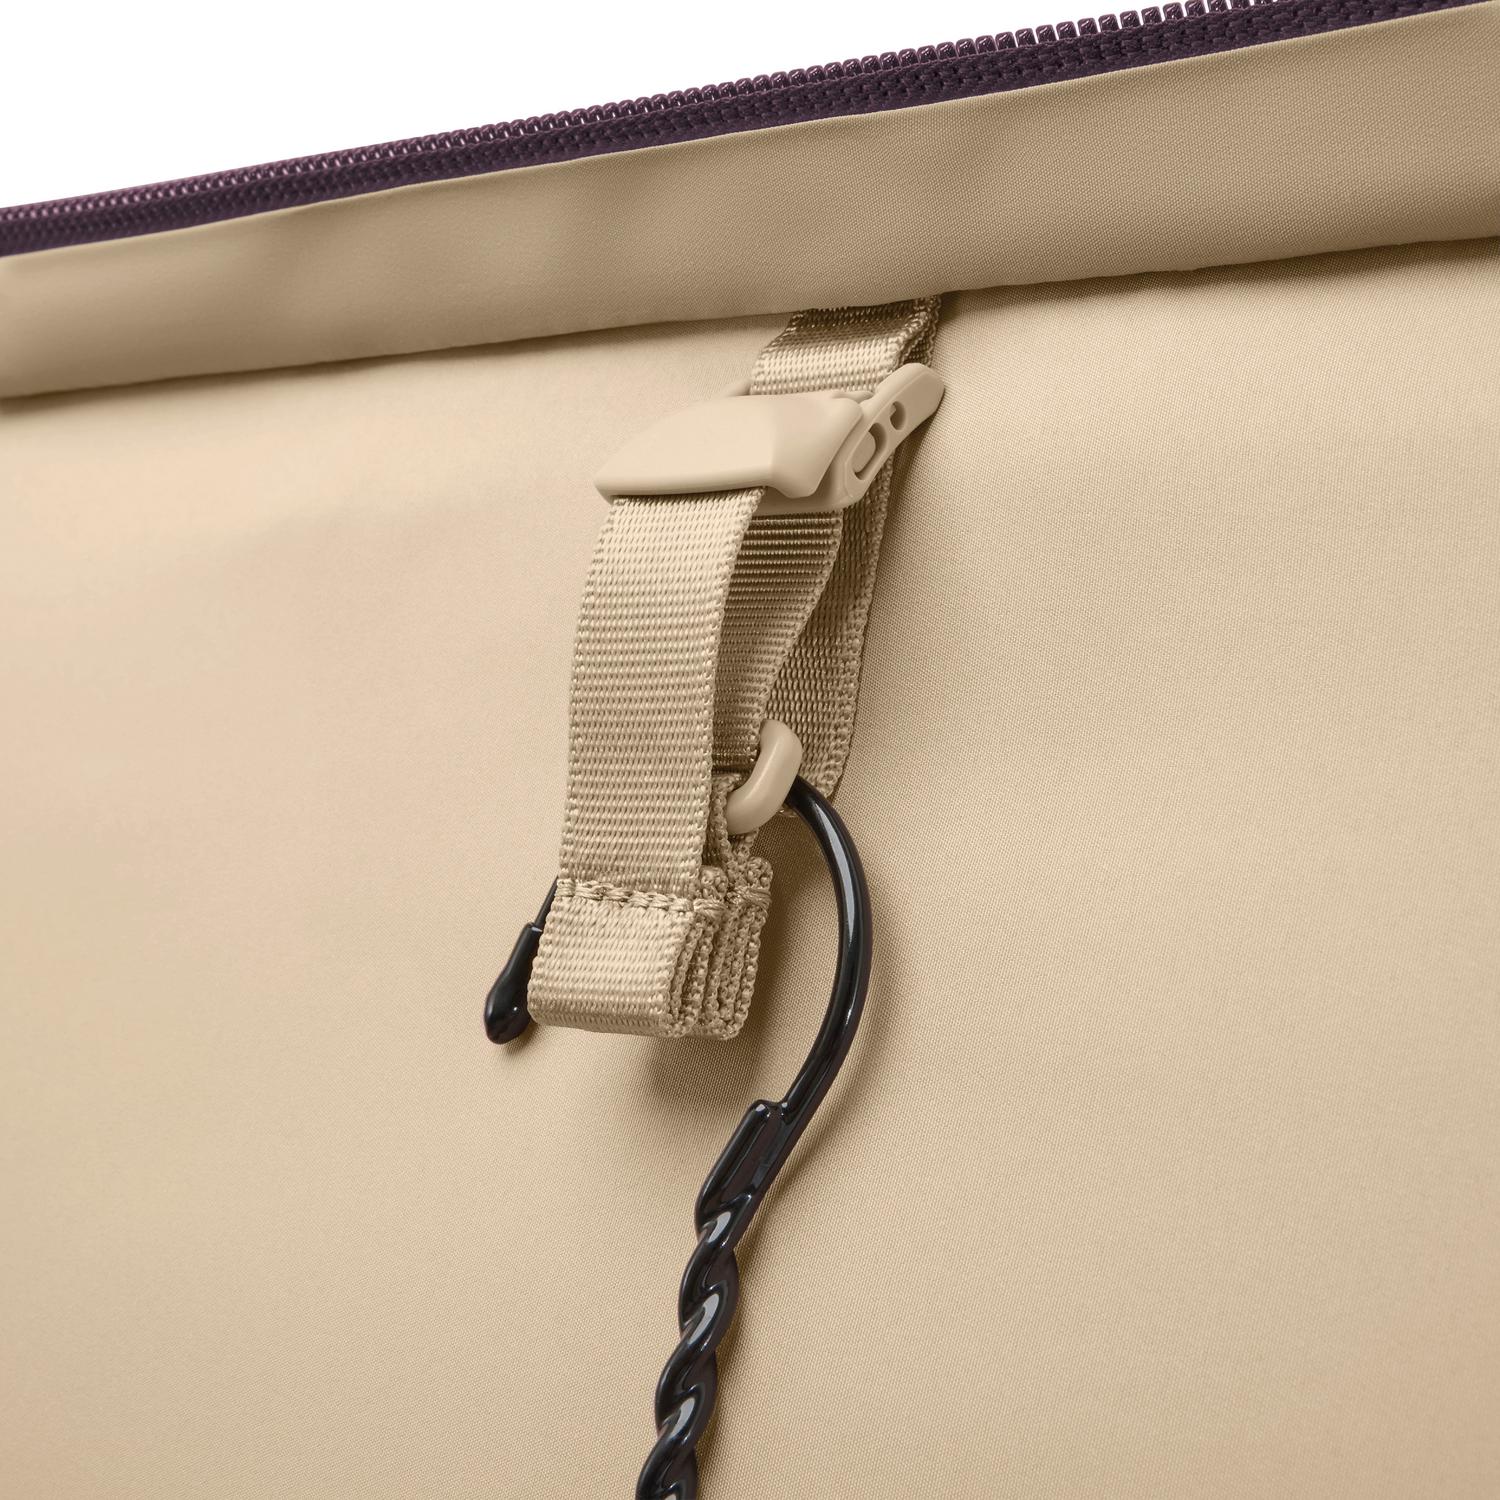 Baseline Essential 22" 2-Wheel Expandable Carry-On Plum Garment Hanger Hook #color_plum